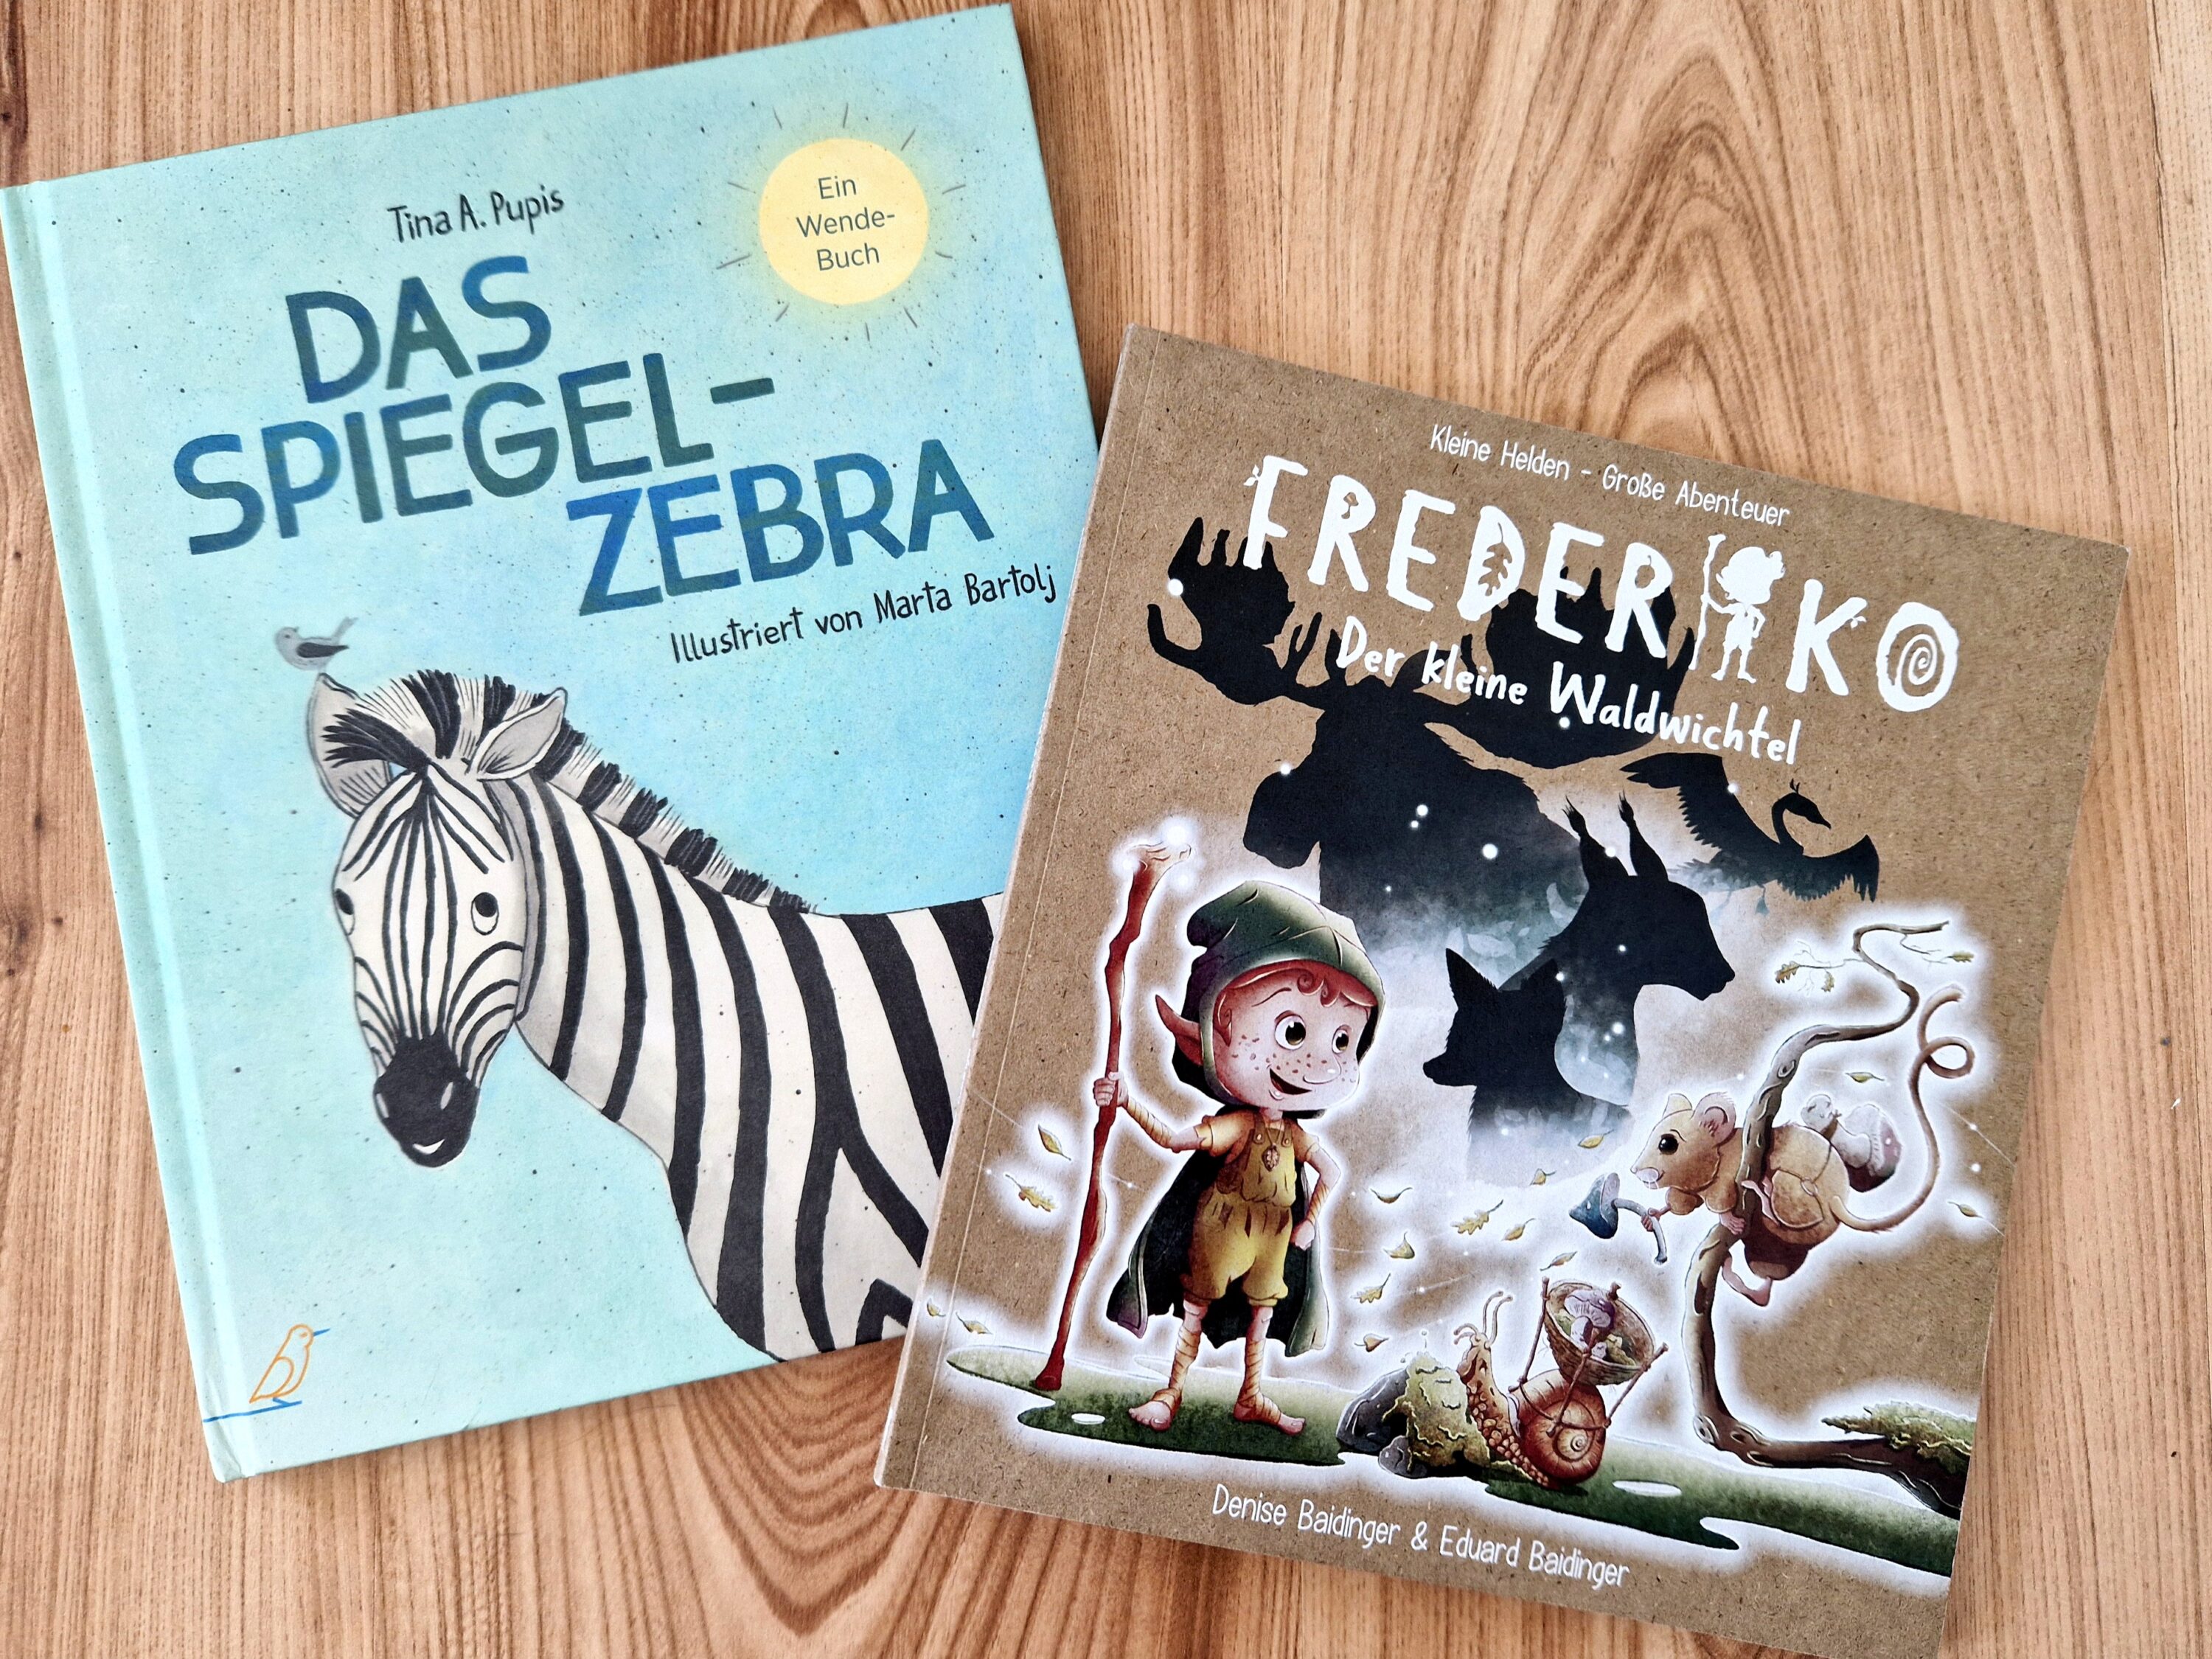 Die beiden Bilderbücher "Das Spiegel-Zebra" und "Frederiko - Der kleine Waldwichtel" liegen nebeneinander